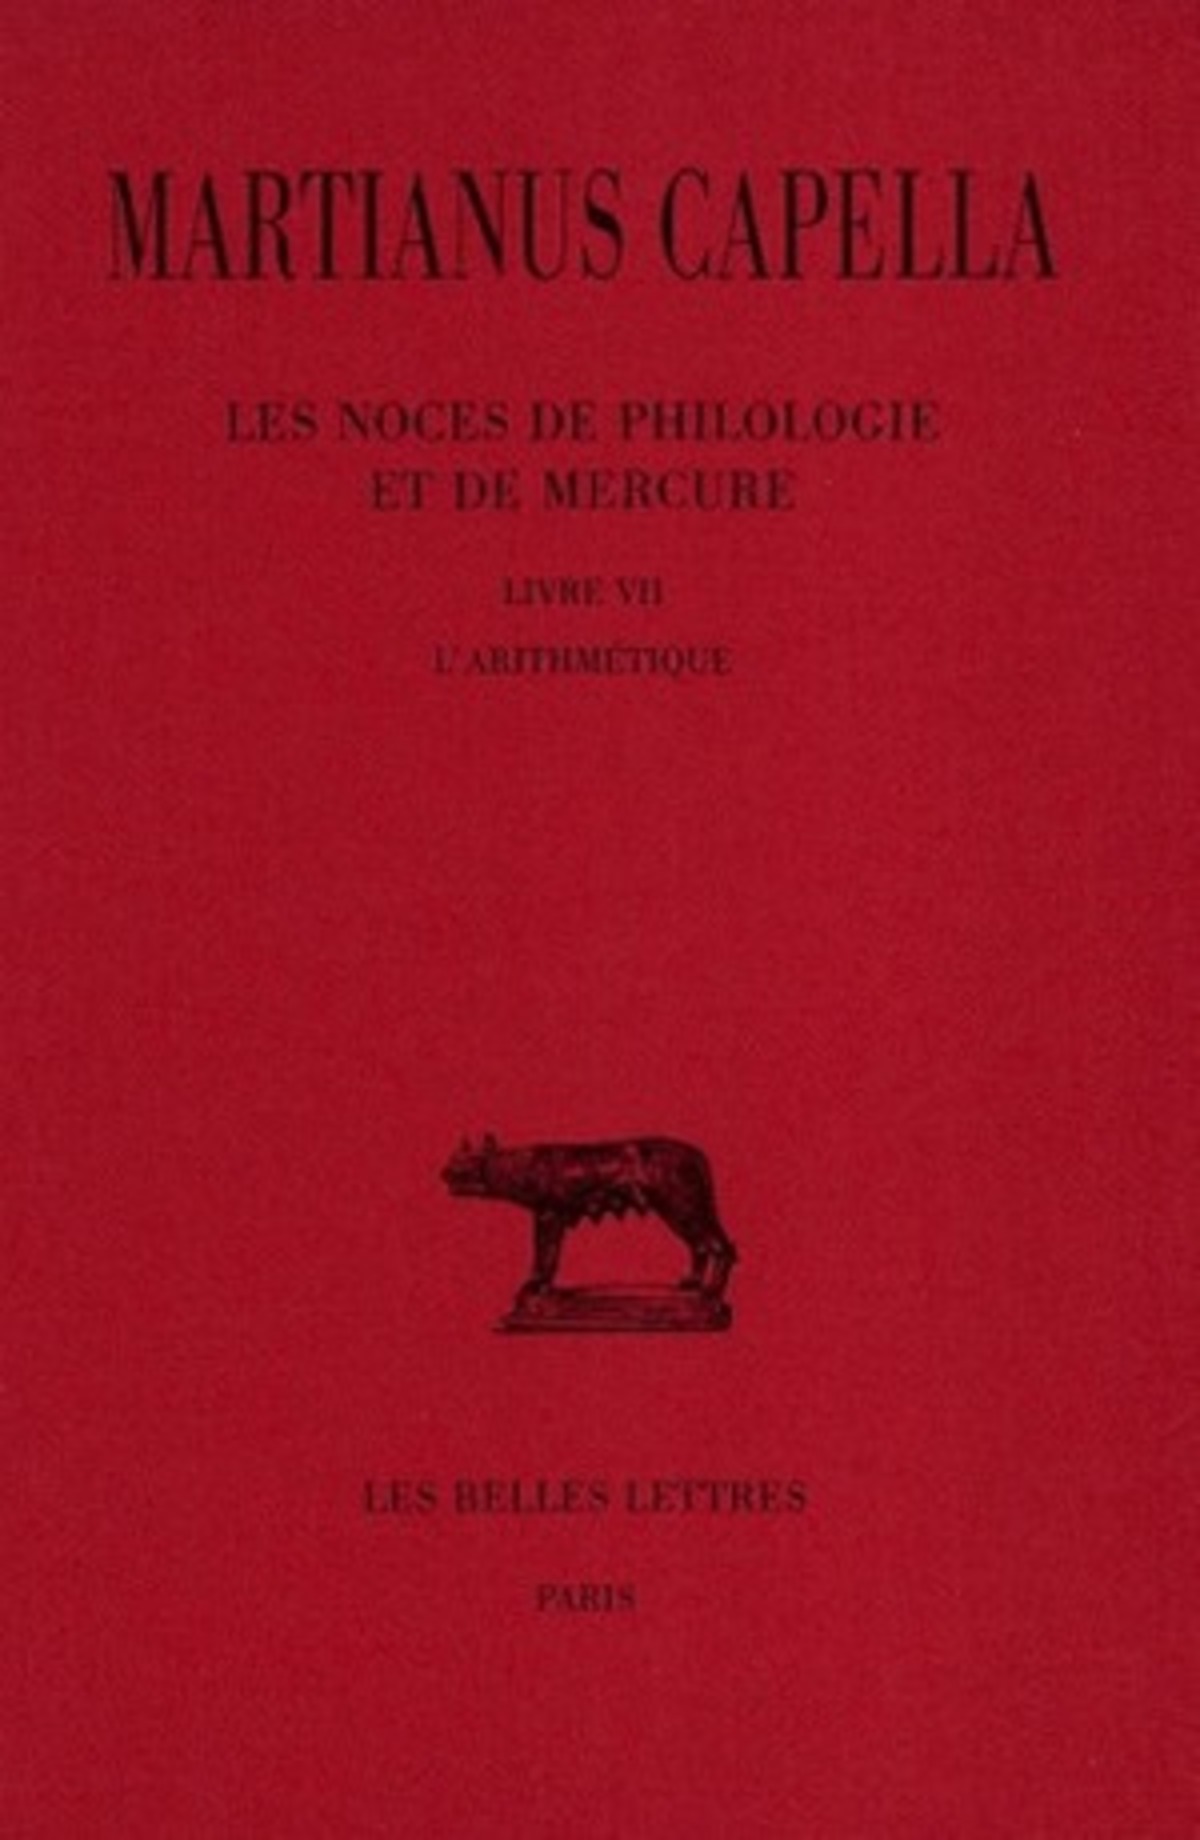 Les Noces de Philologie et de Mercure. Tome VII, Livre VII : L'Arithmétique